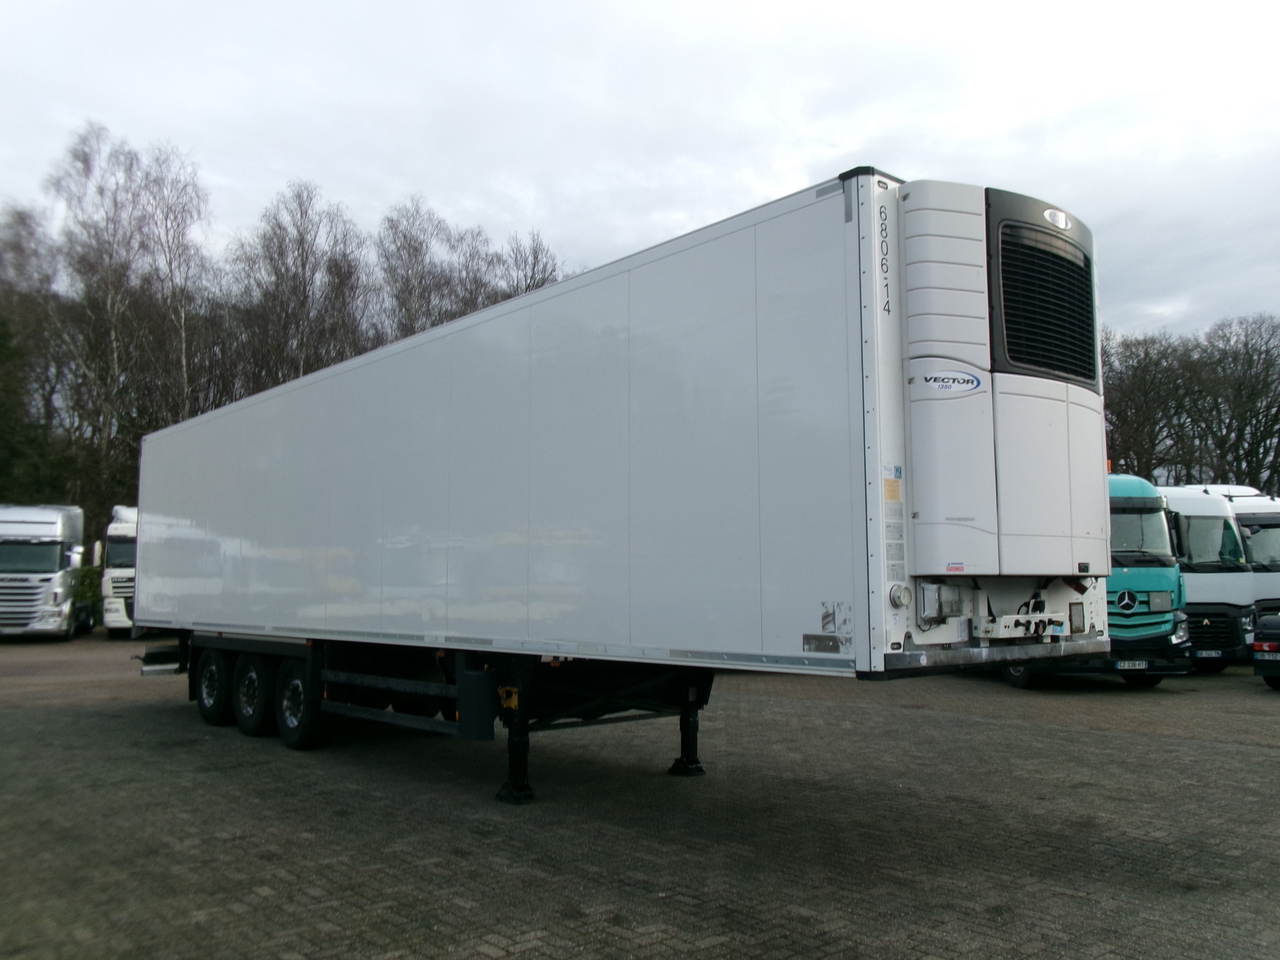 סמיטריילר עם קירור Schmitz Frigo trailer + Carrier Vector 1350: תמונה 2